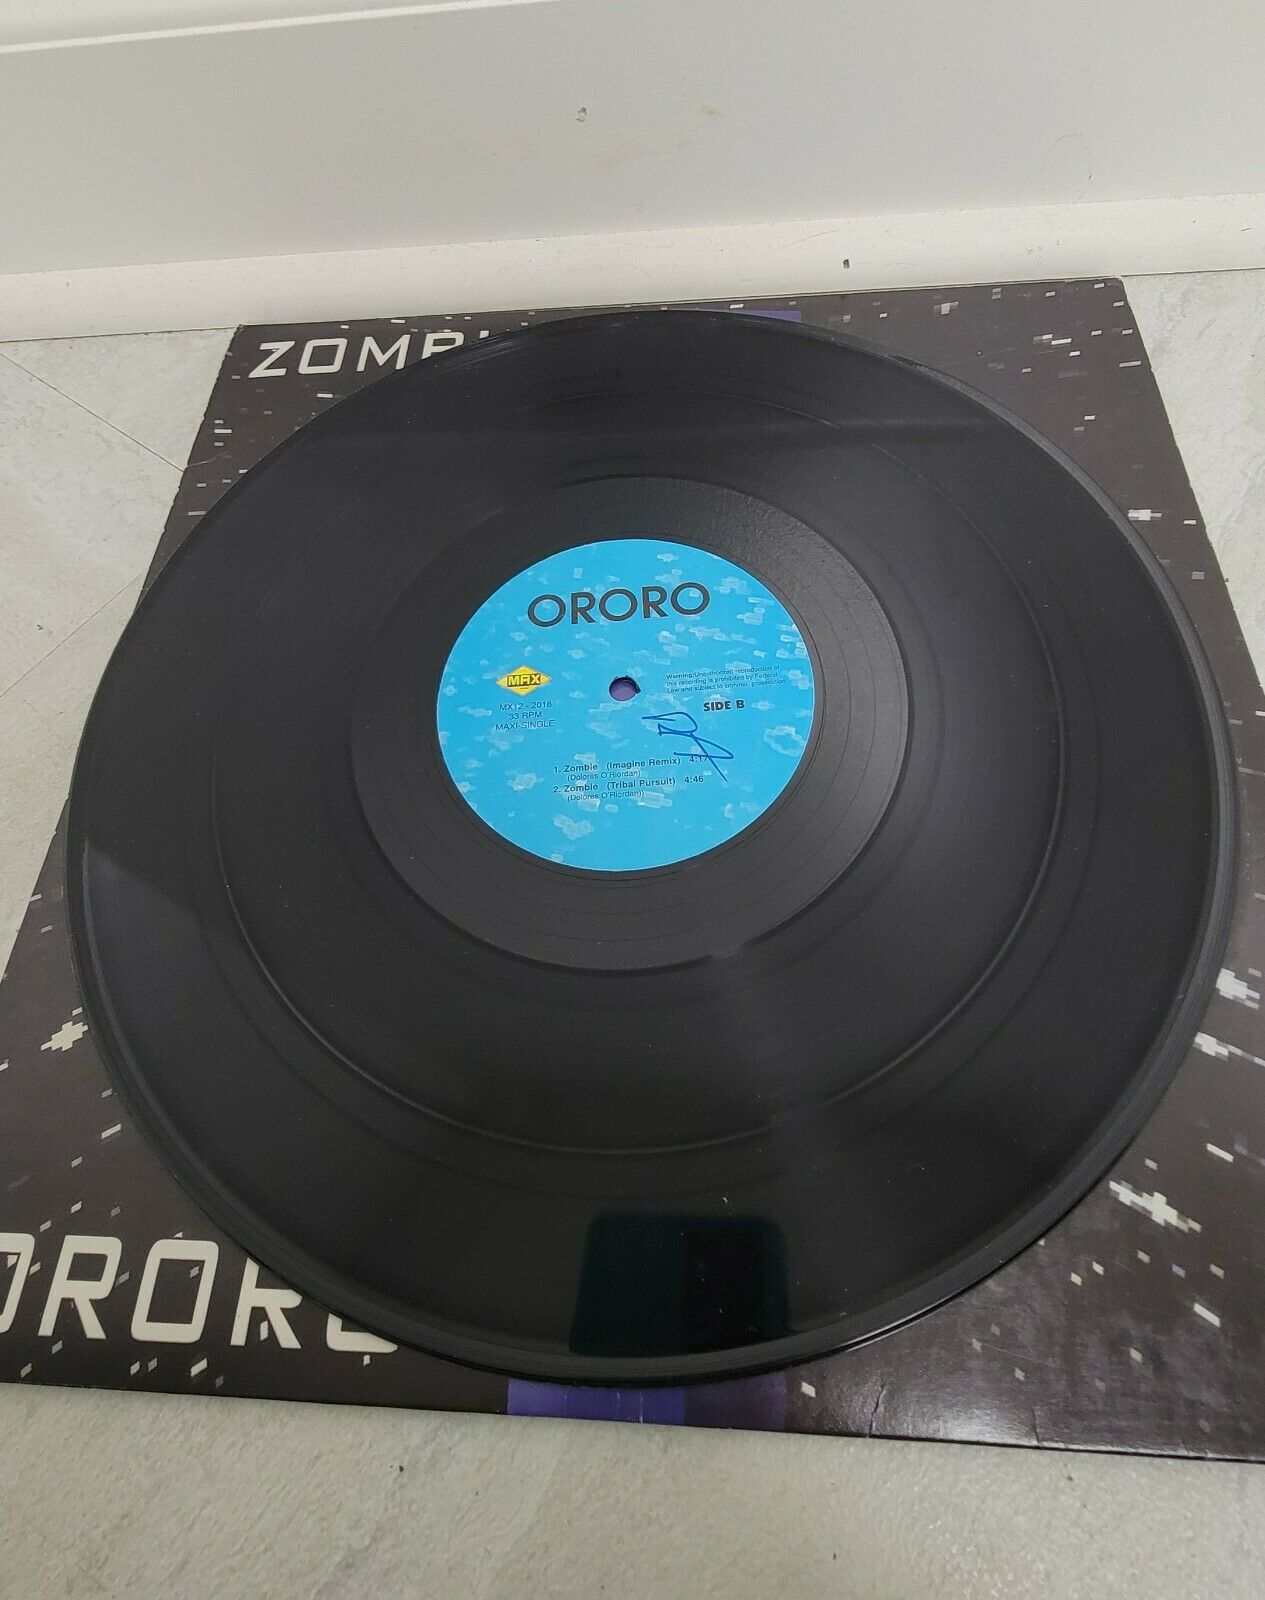 Ororo "Zombie" 1996 (The Cranberries) Electronic Remix Record Album